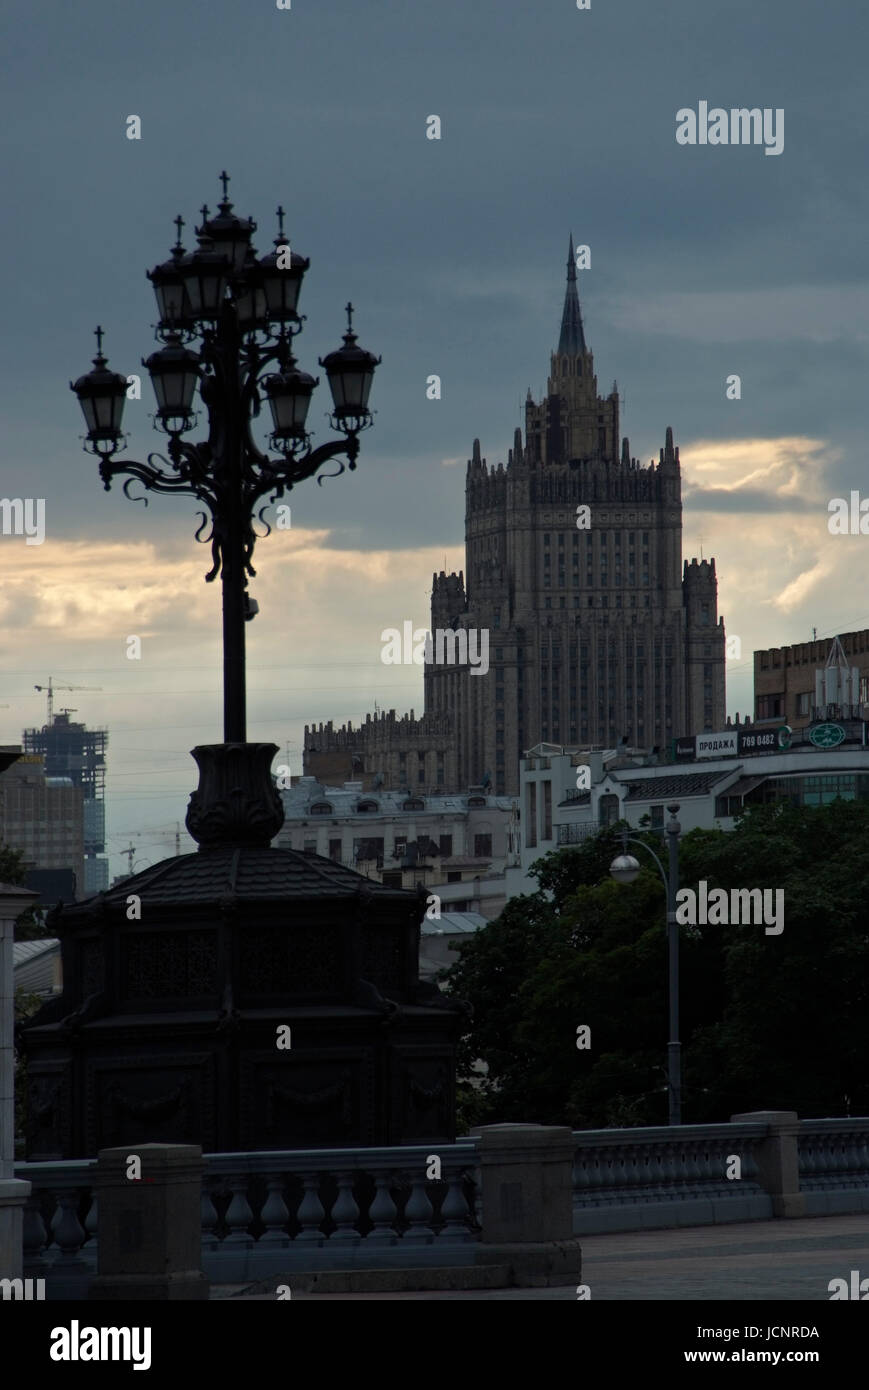 Edificio di Stalin, Ministero degli Affari Esteri, Mosca, Russia, Europa, Sette sorelle, Stalin architettura Foto Stock